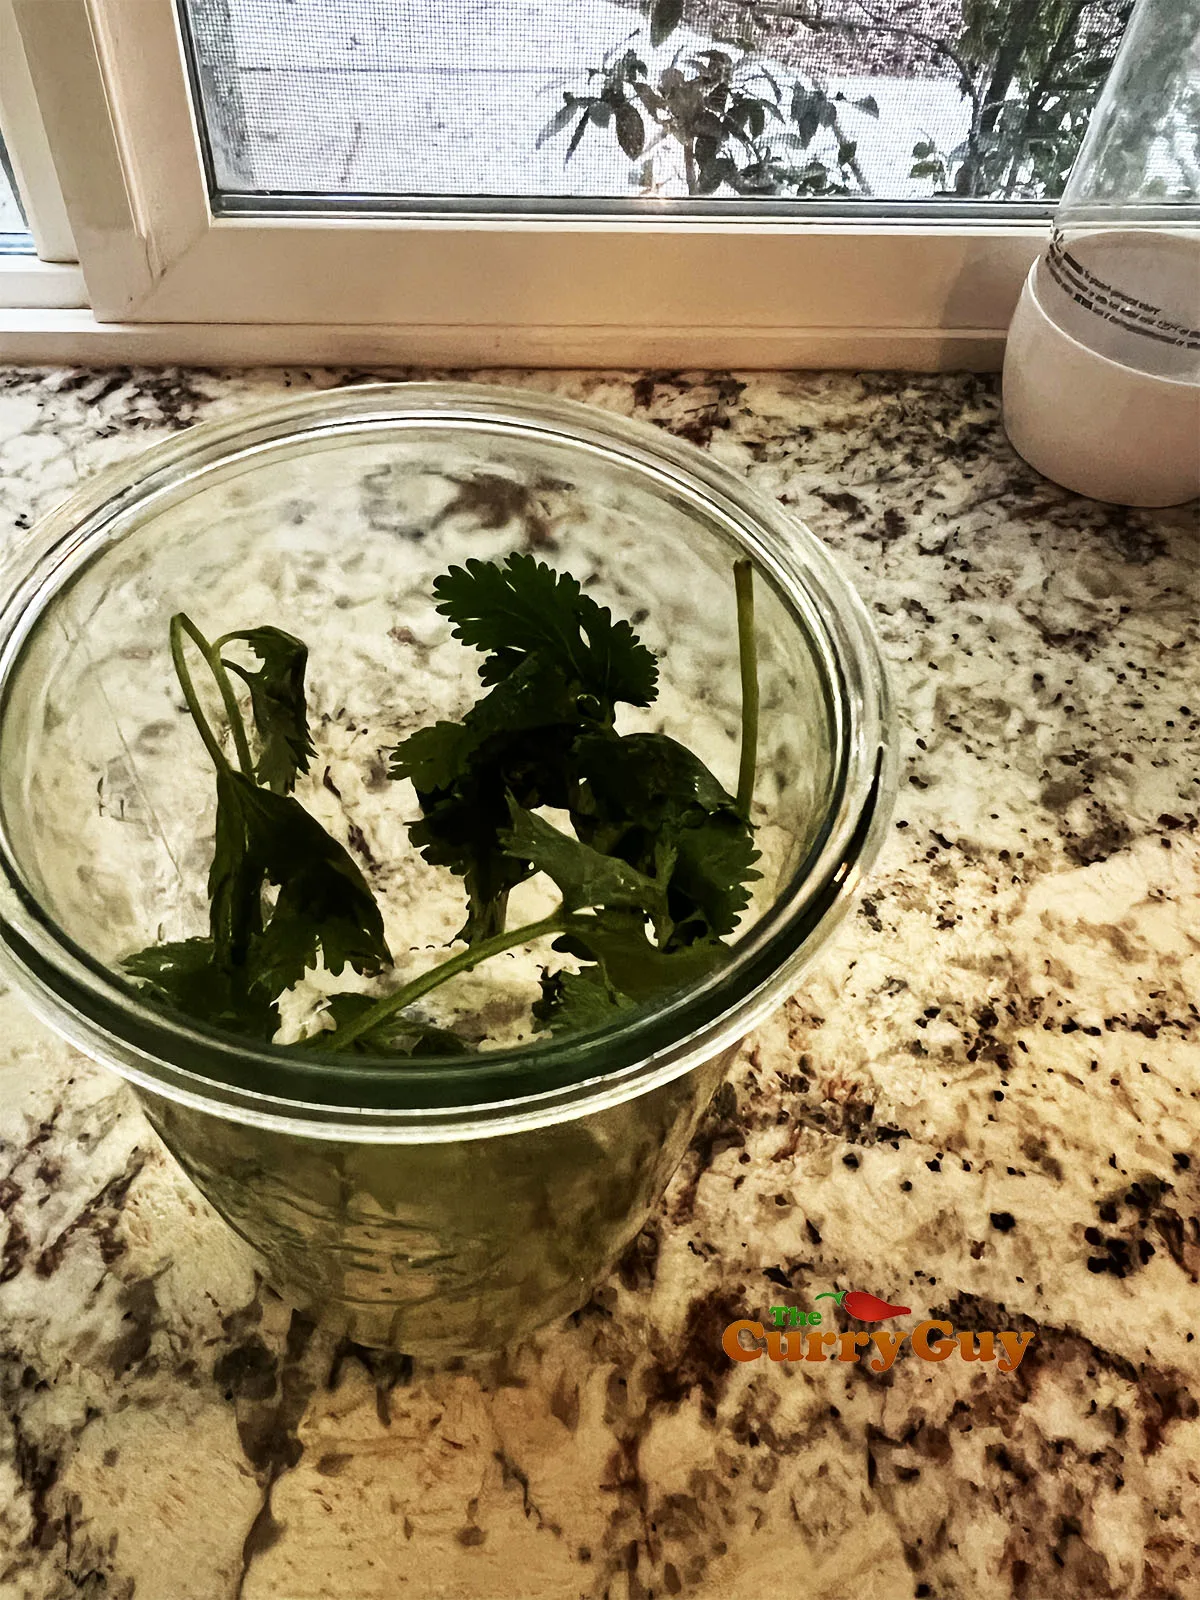 Placing cilantro (coriander) sprigs to a pickling jar.